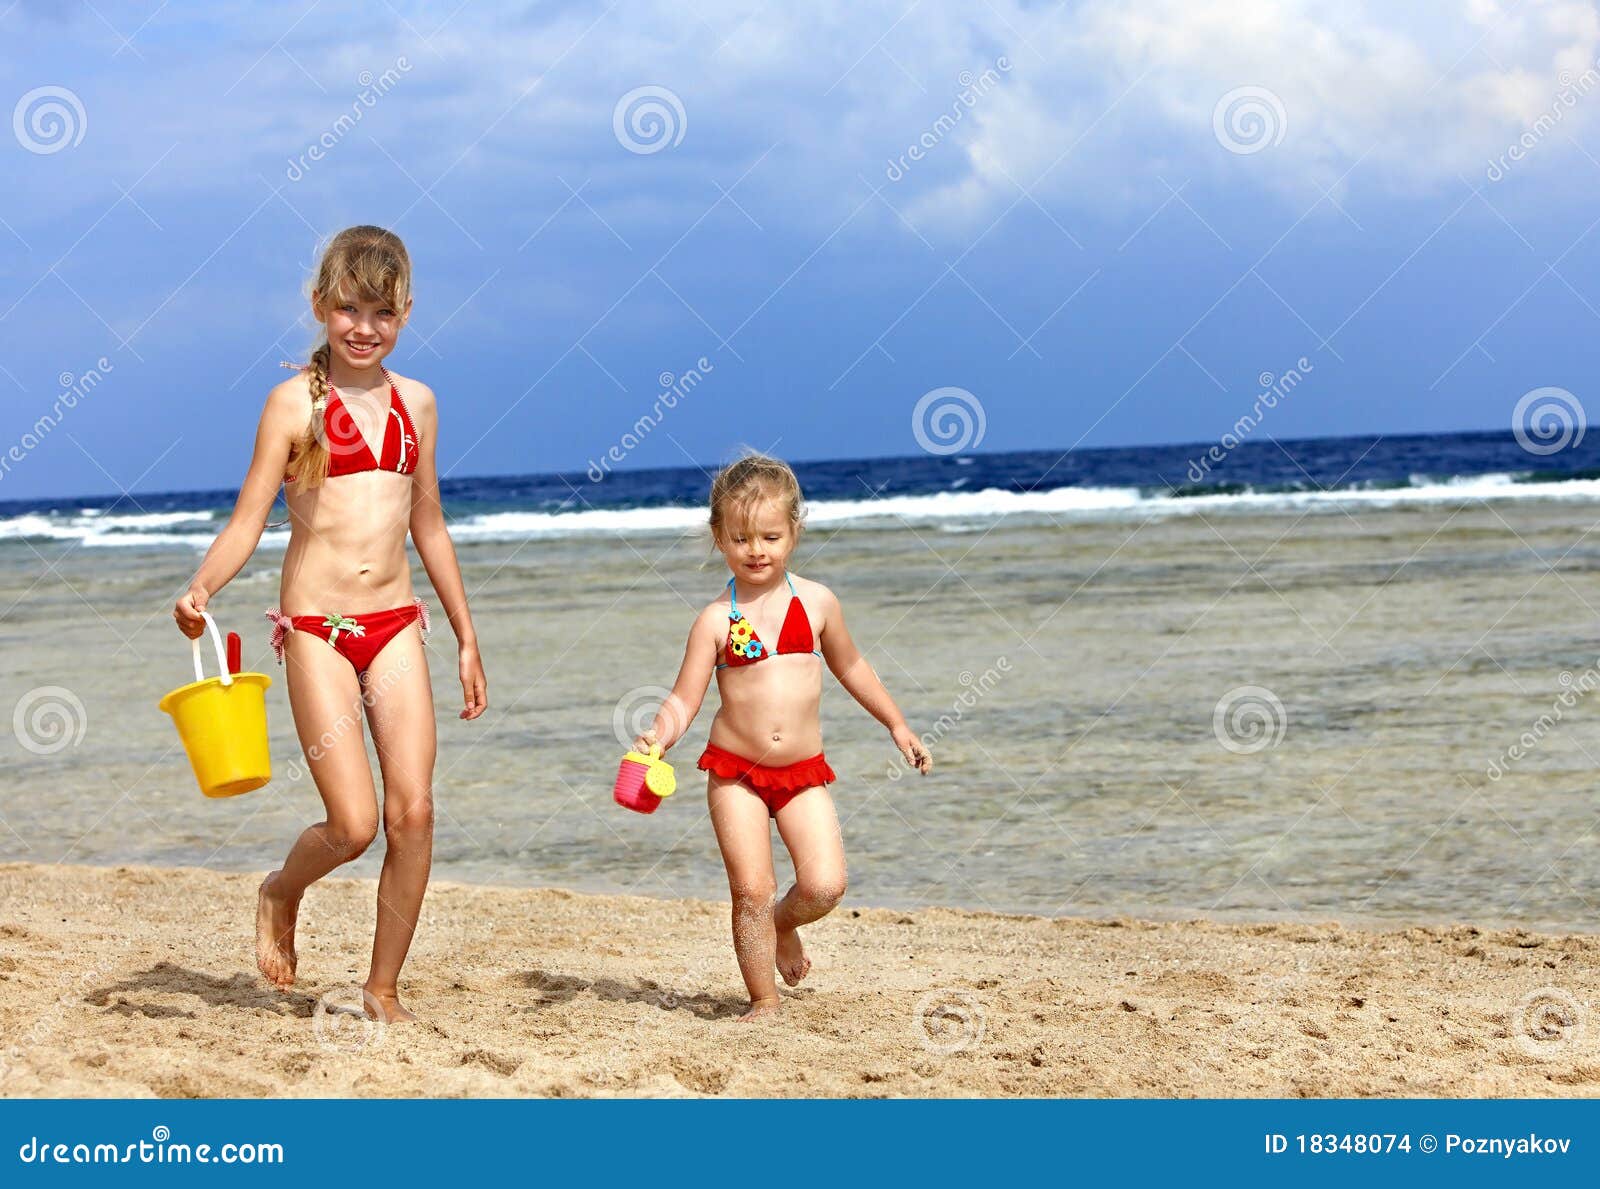 дети на голом пляже фото 59